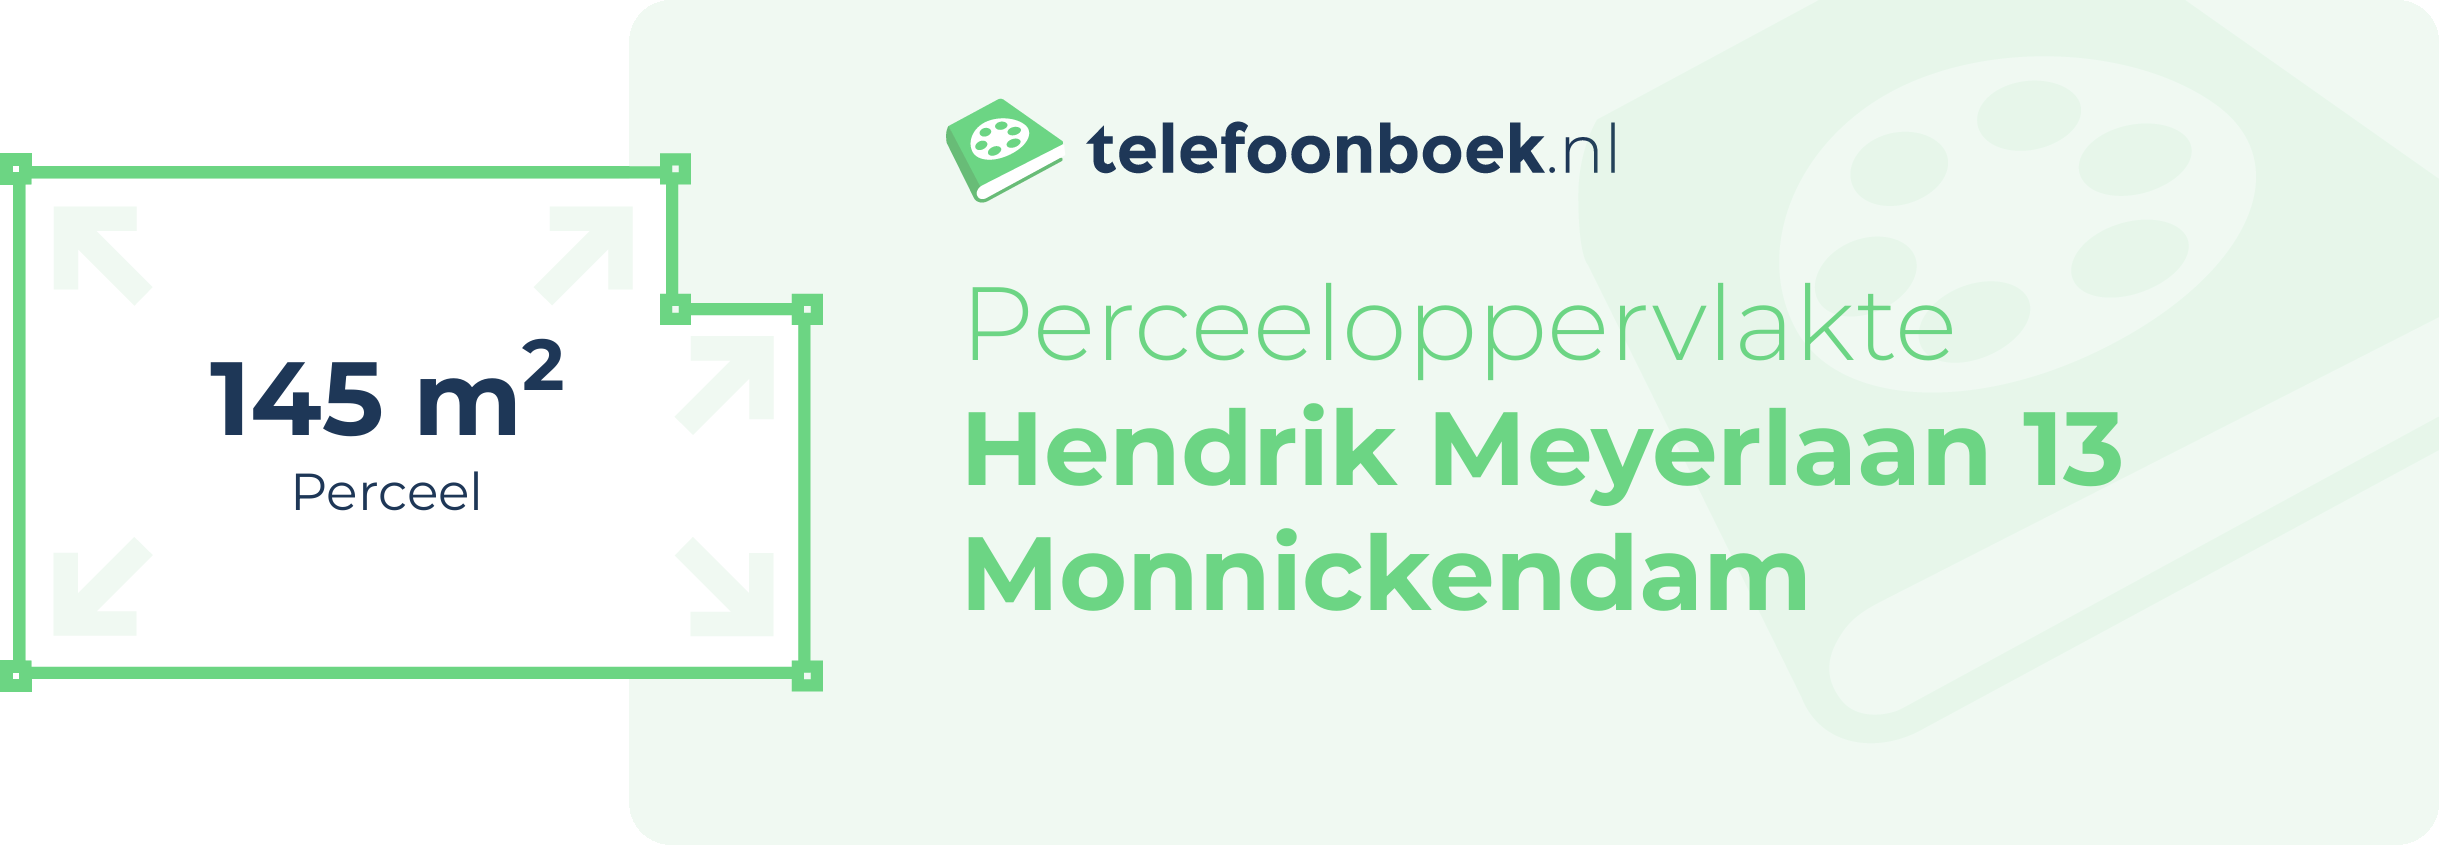 Perceeloppervlakte Hendrik Meyerlaan 13 Monnickendam